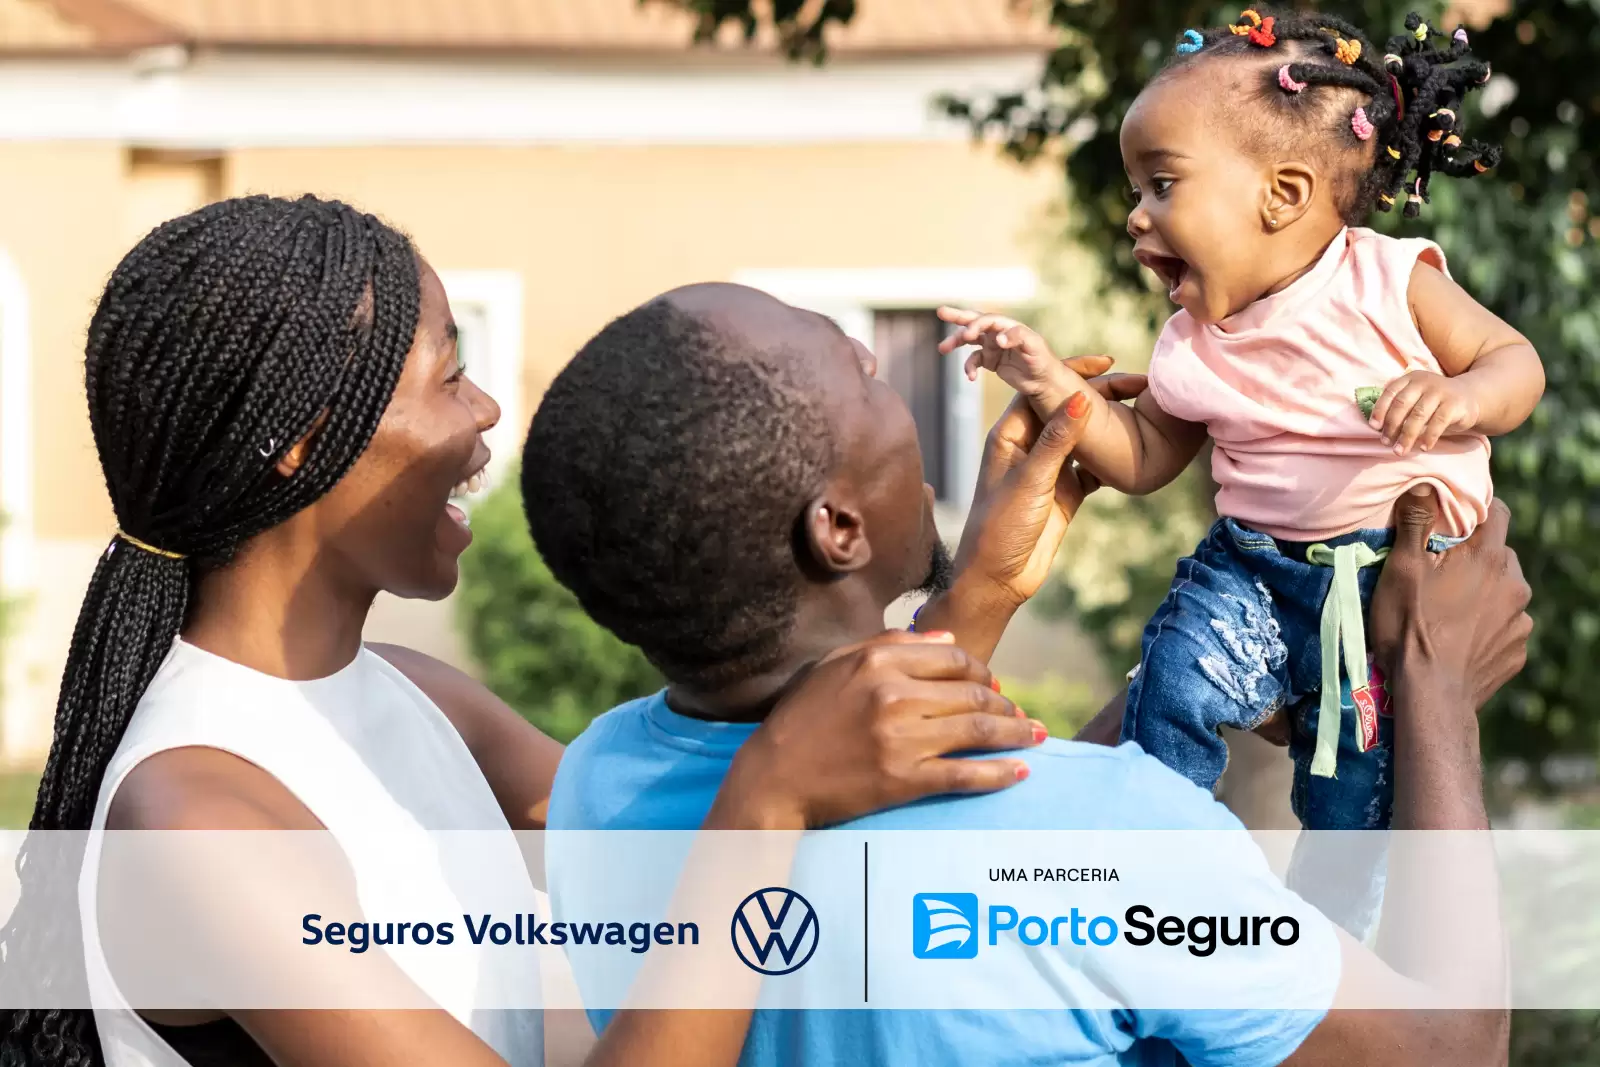 Seguro Volkswagen: uma mulher e um homem sorriem e brincam com um bebe.